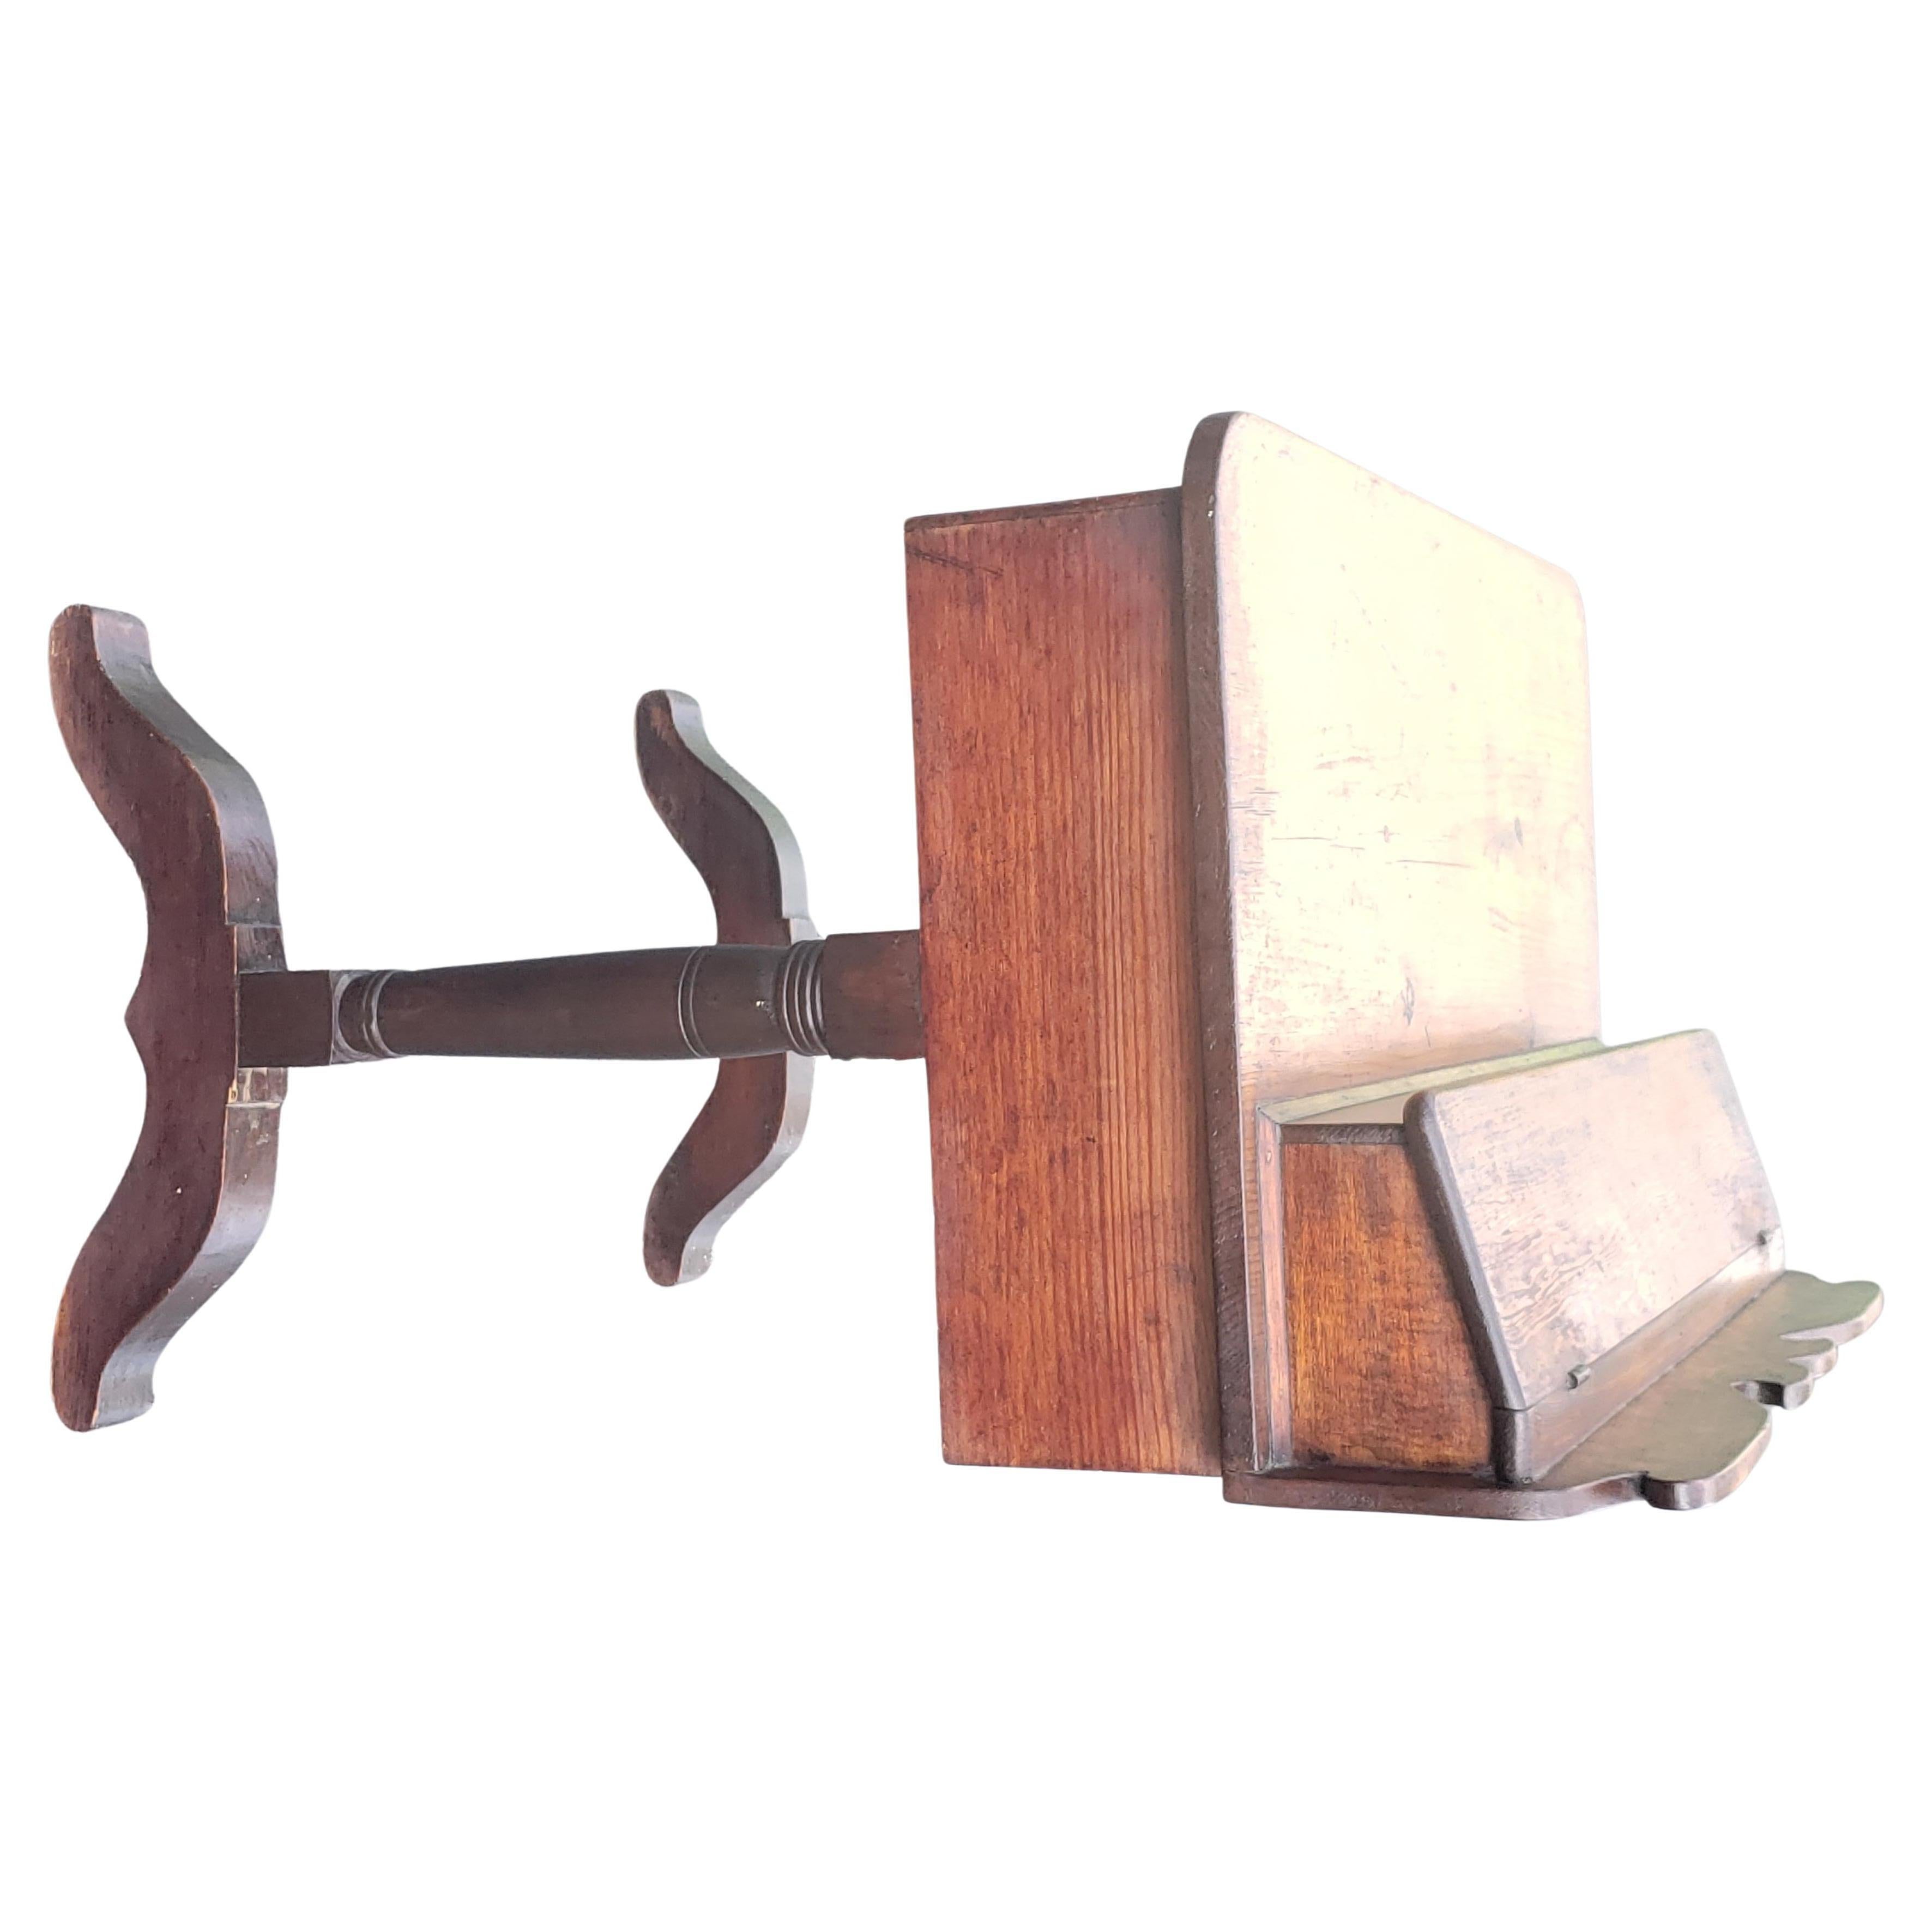 Kleiner Schreibtisch aus den 1800er Jahren in Neuengland. Originale Patina. Guter, stabiler Zustand. Funktionelle Schubladen mit originalen Kieferknopfzügen. Messen Sie 28